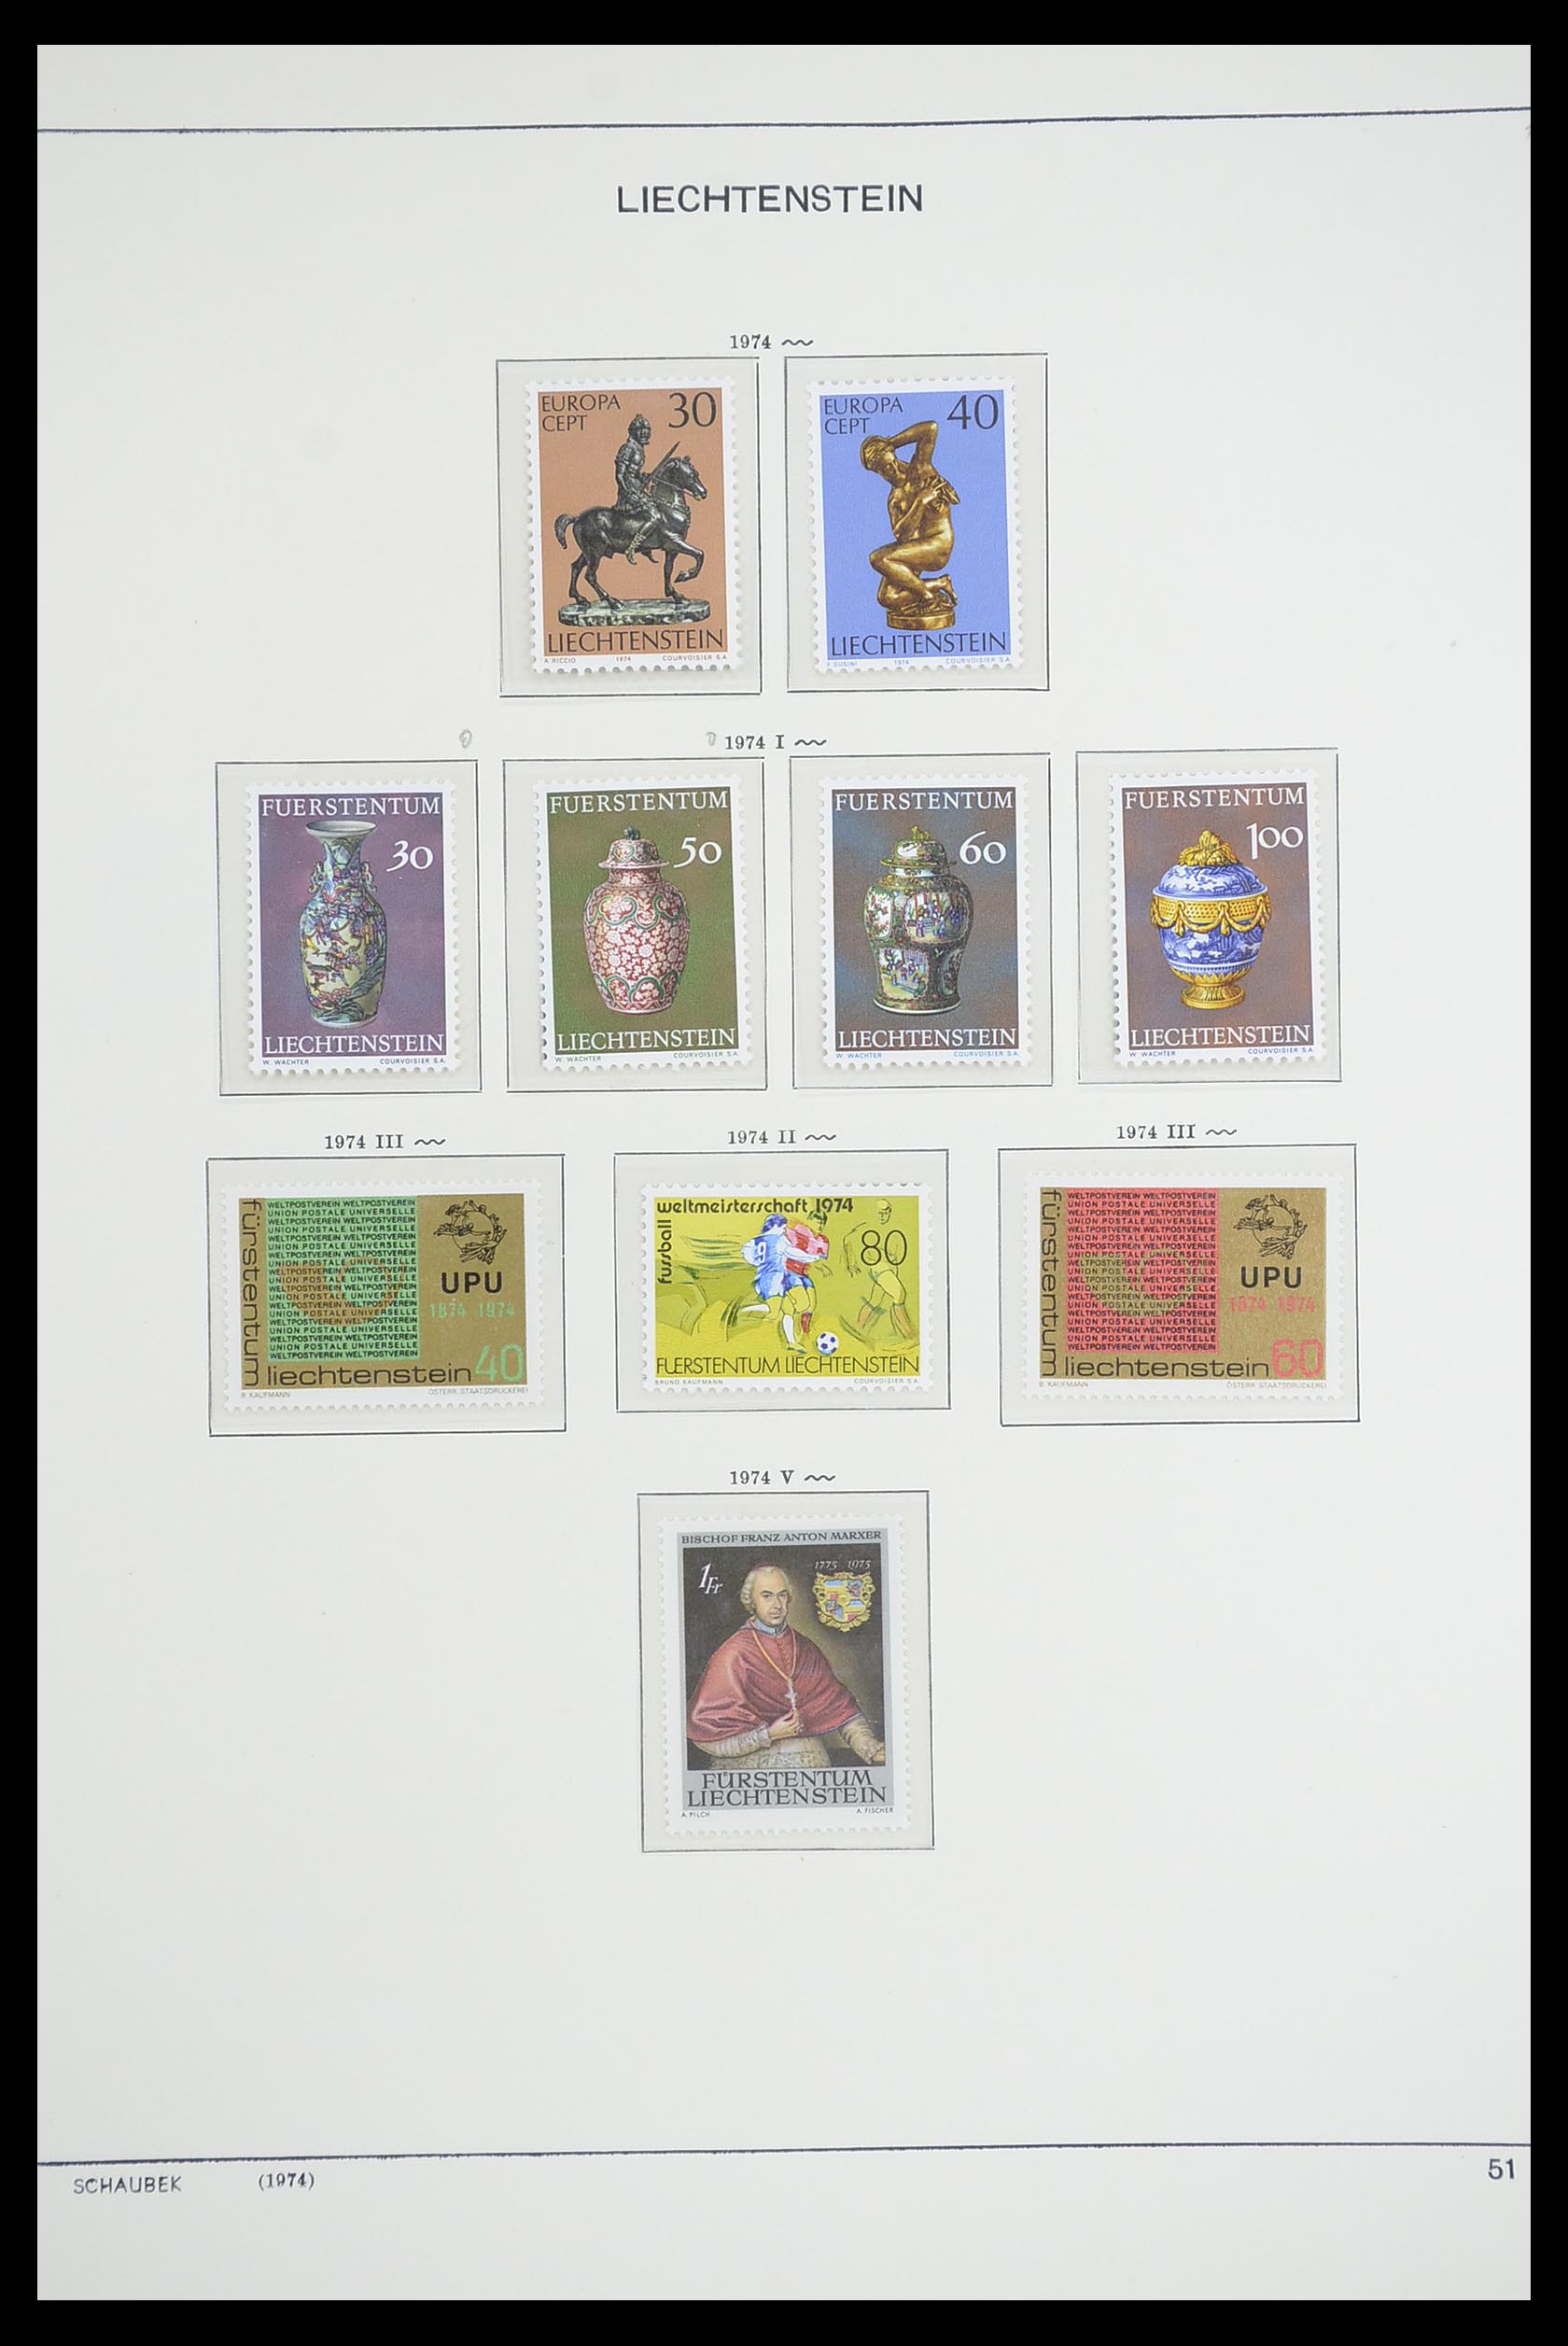 33274 060 - Stamp collection 33274 Liechtenstein 1912-1996.